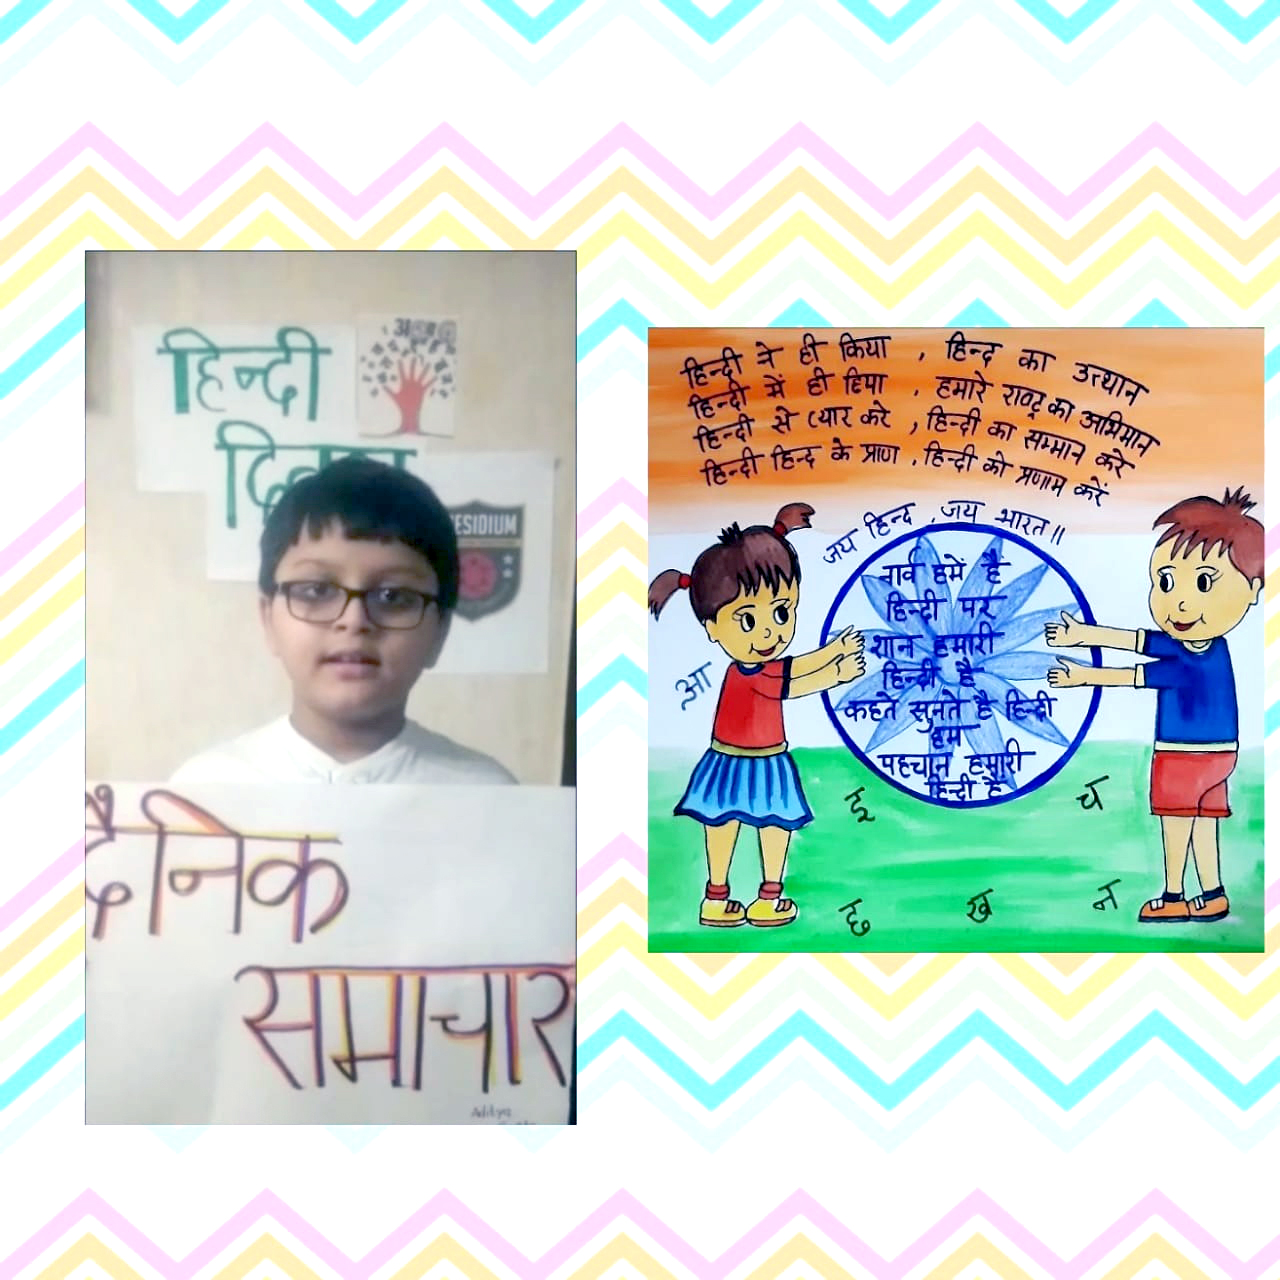 Presidium Pitampura, हिंदी दिवस पर किया विद्यार्थियों को हिंदी भाषा के प्रति जागरूक